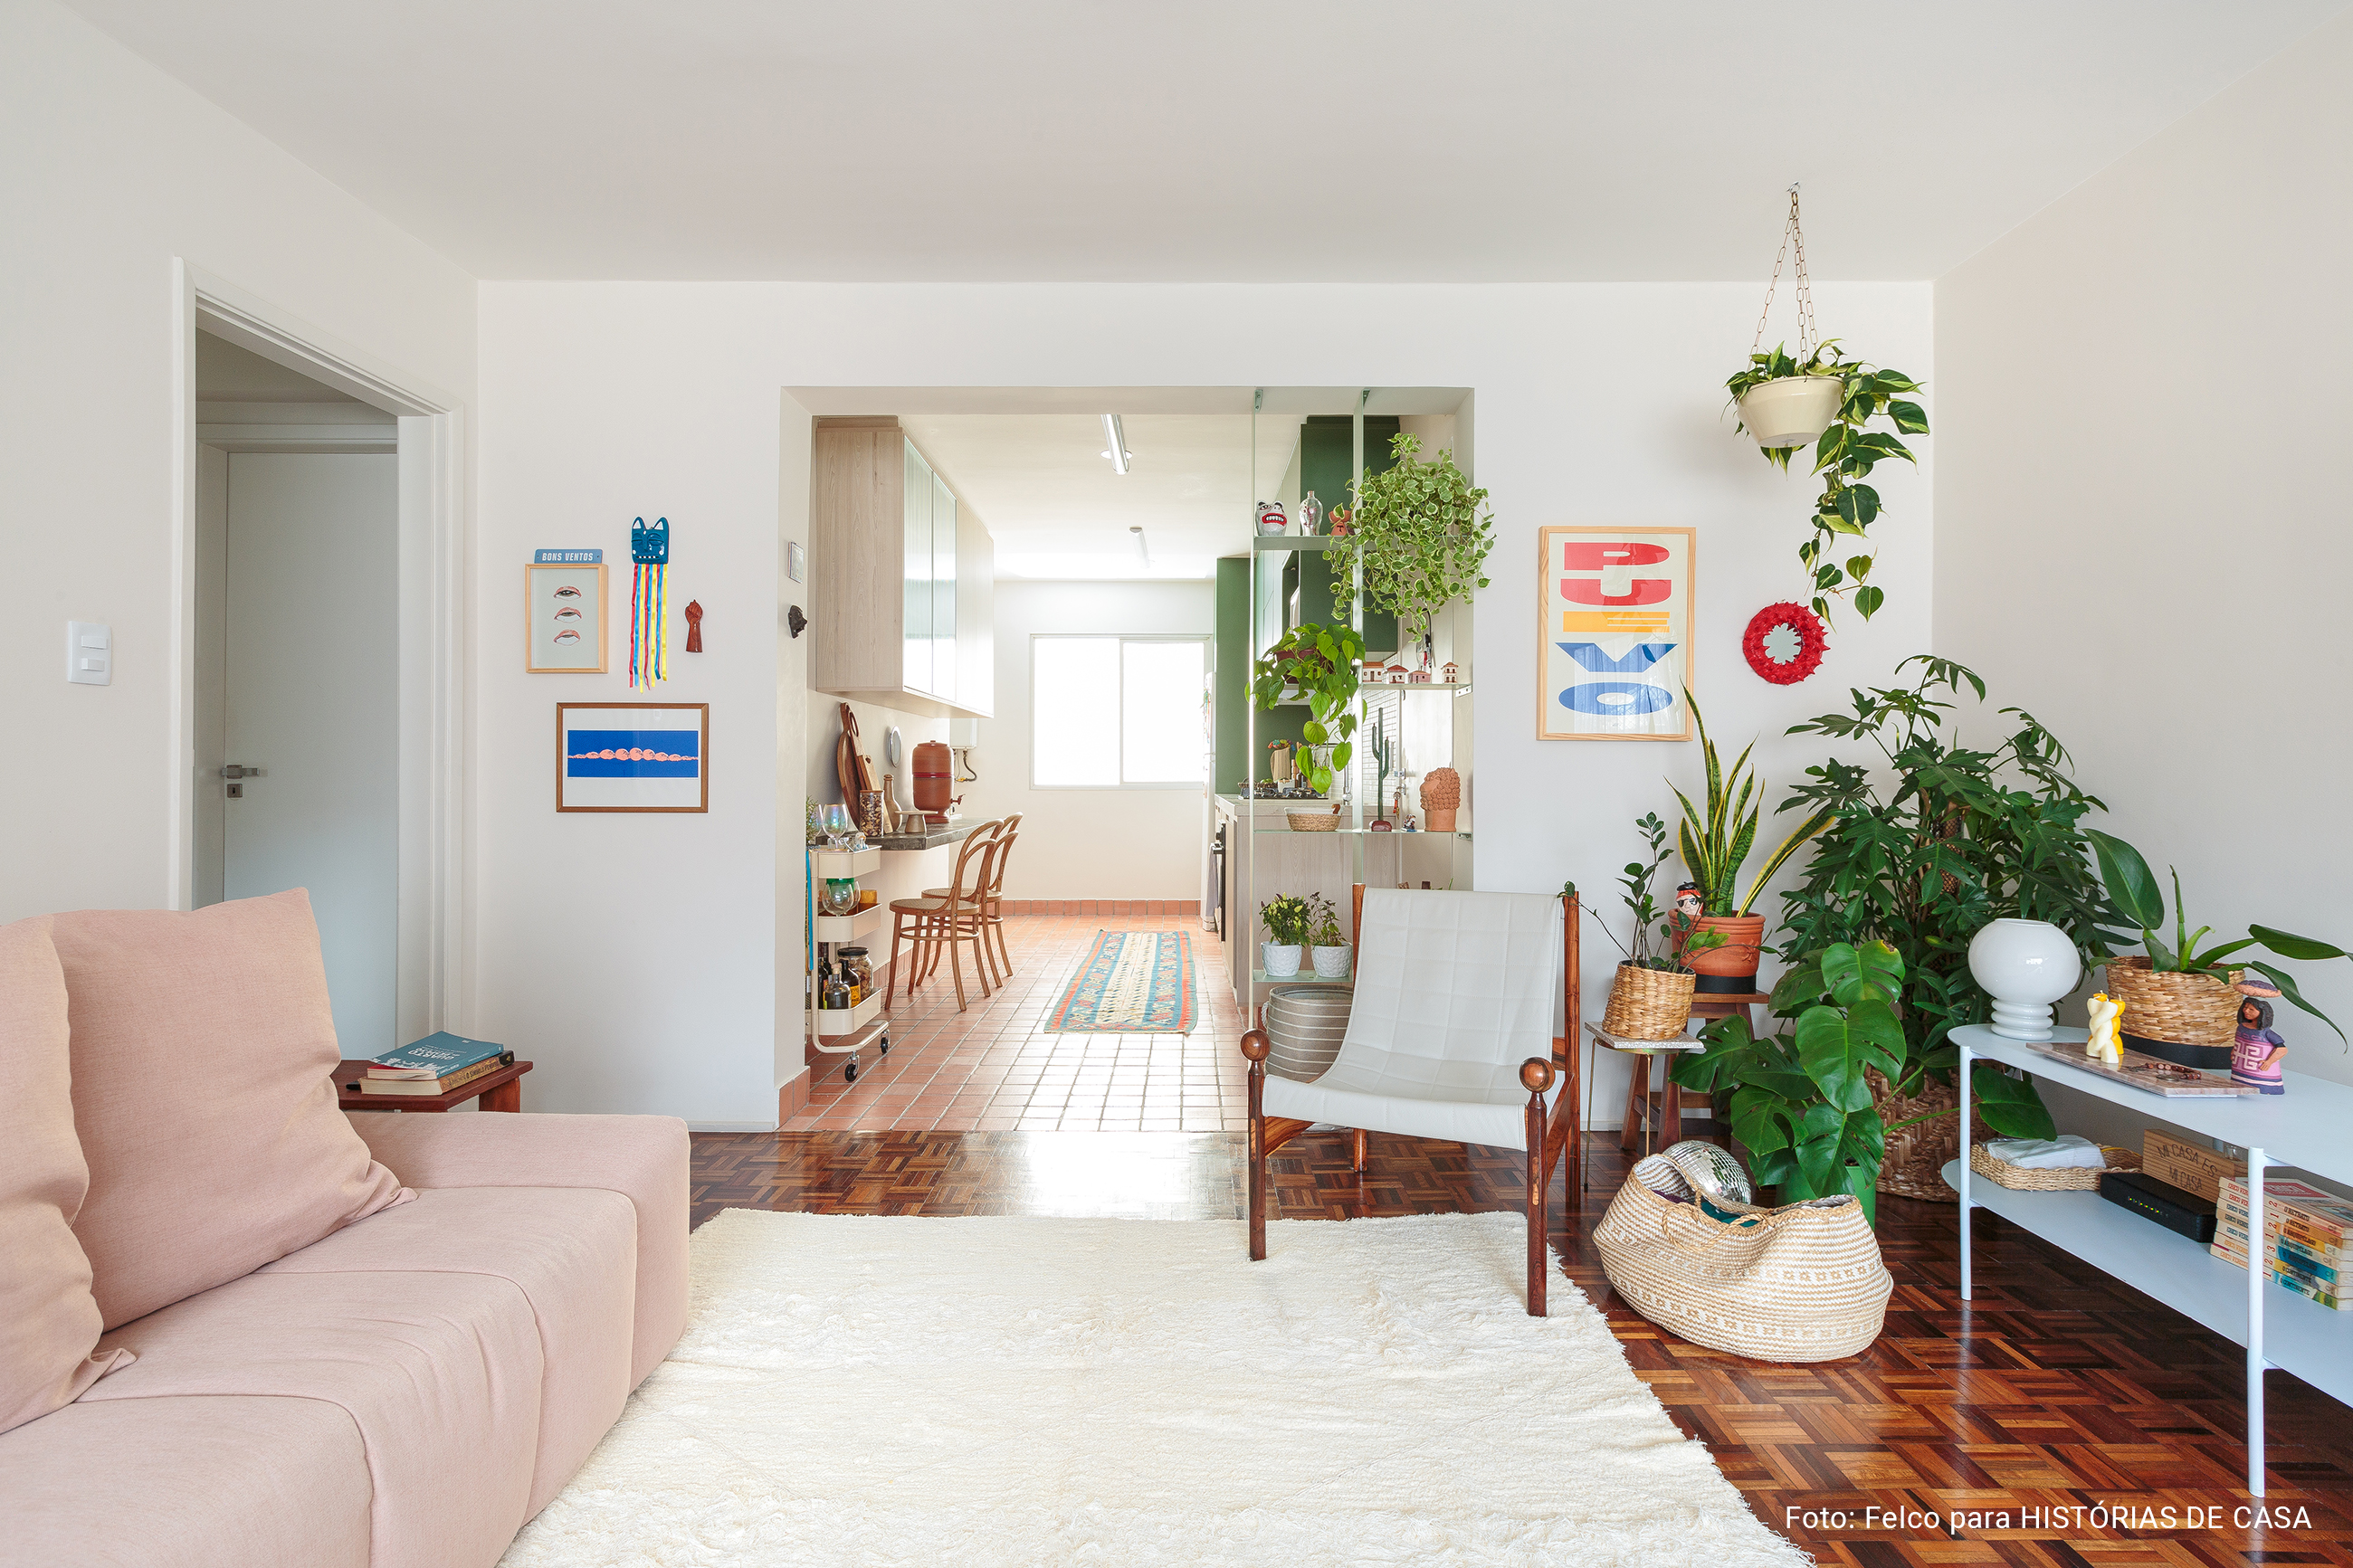 Apartamento alugado colorido com chão de taco e plantas.